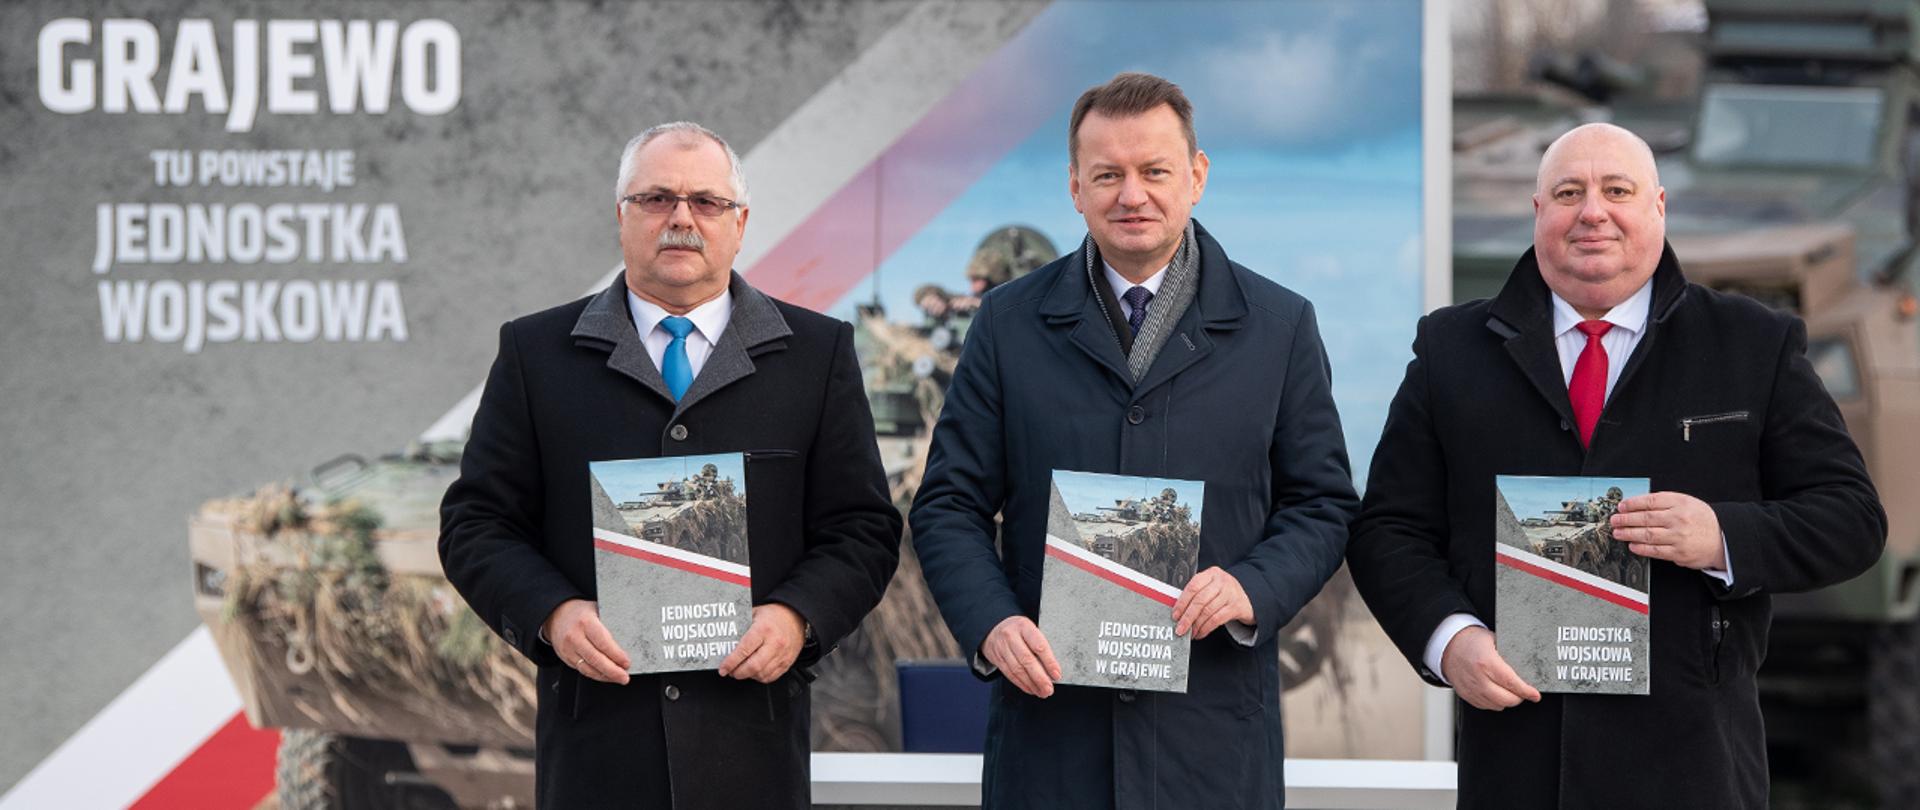 19 listopada minister M. Błaszczak podpisał porozumienie z lokalnymi władzami o udostępnieniu nieruchomości na rzecz powstającej w mieście jednostki wojskowej. 